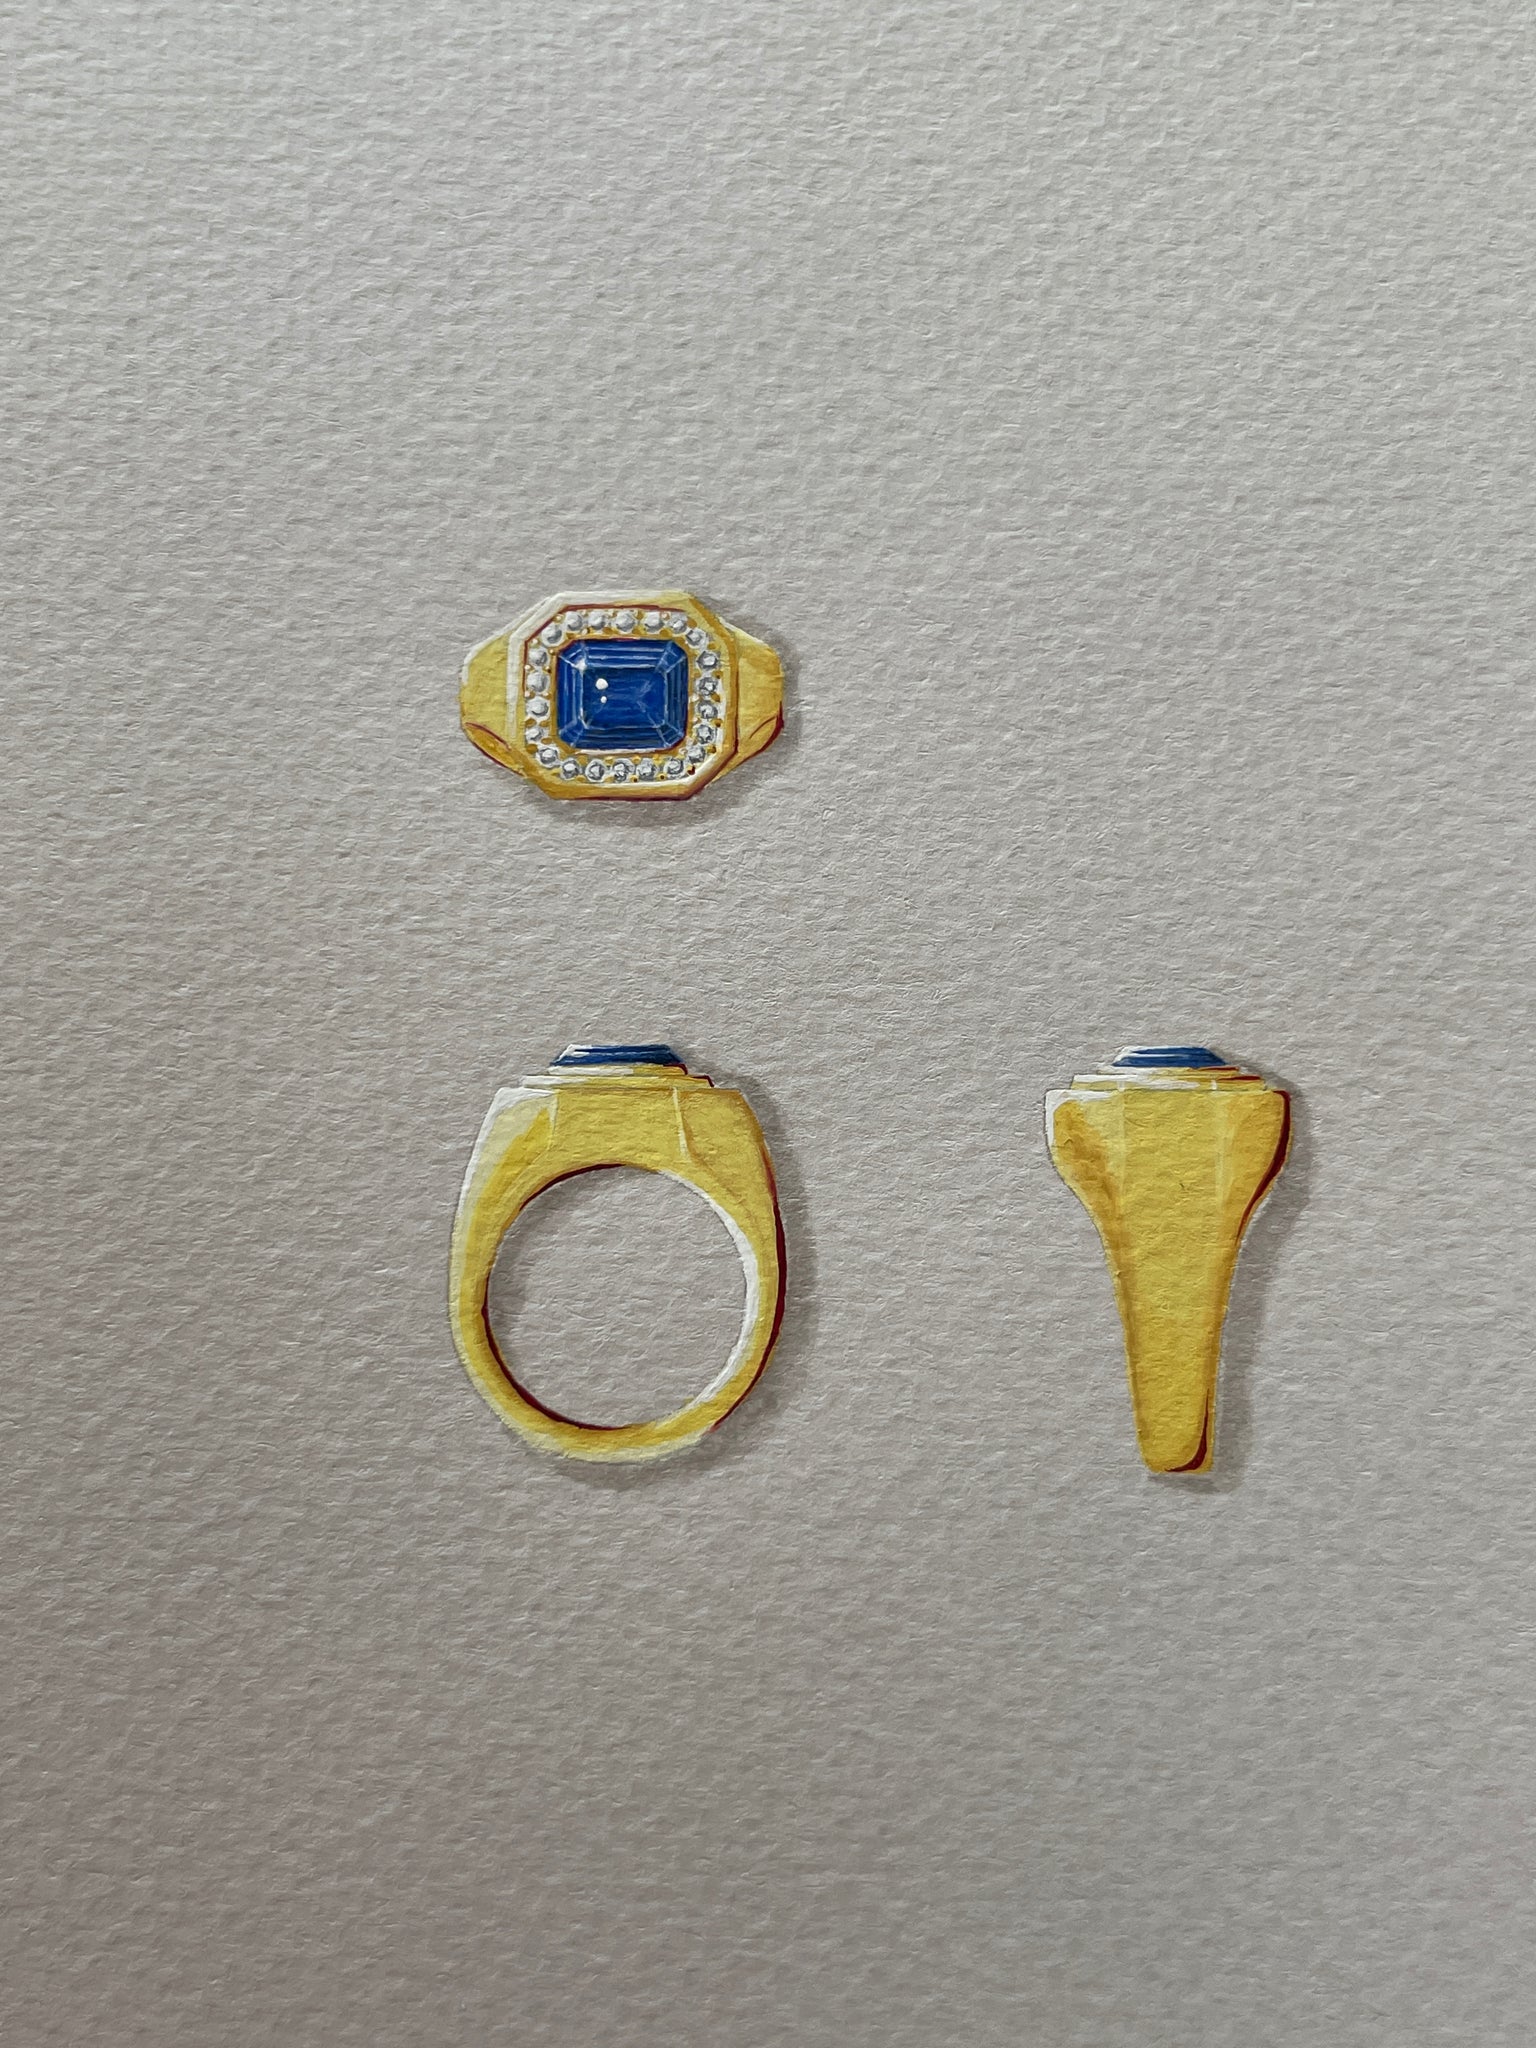 Berlin: Blue Sapphire and Diamond Ring - Minka Jewels